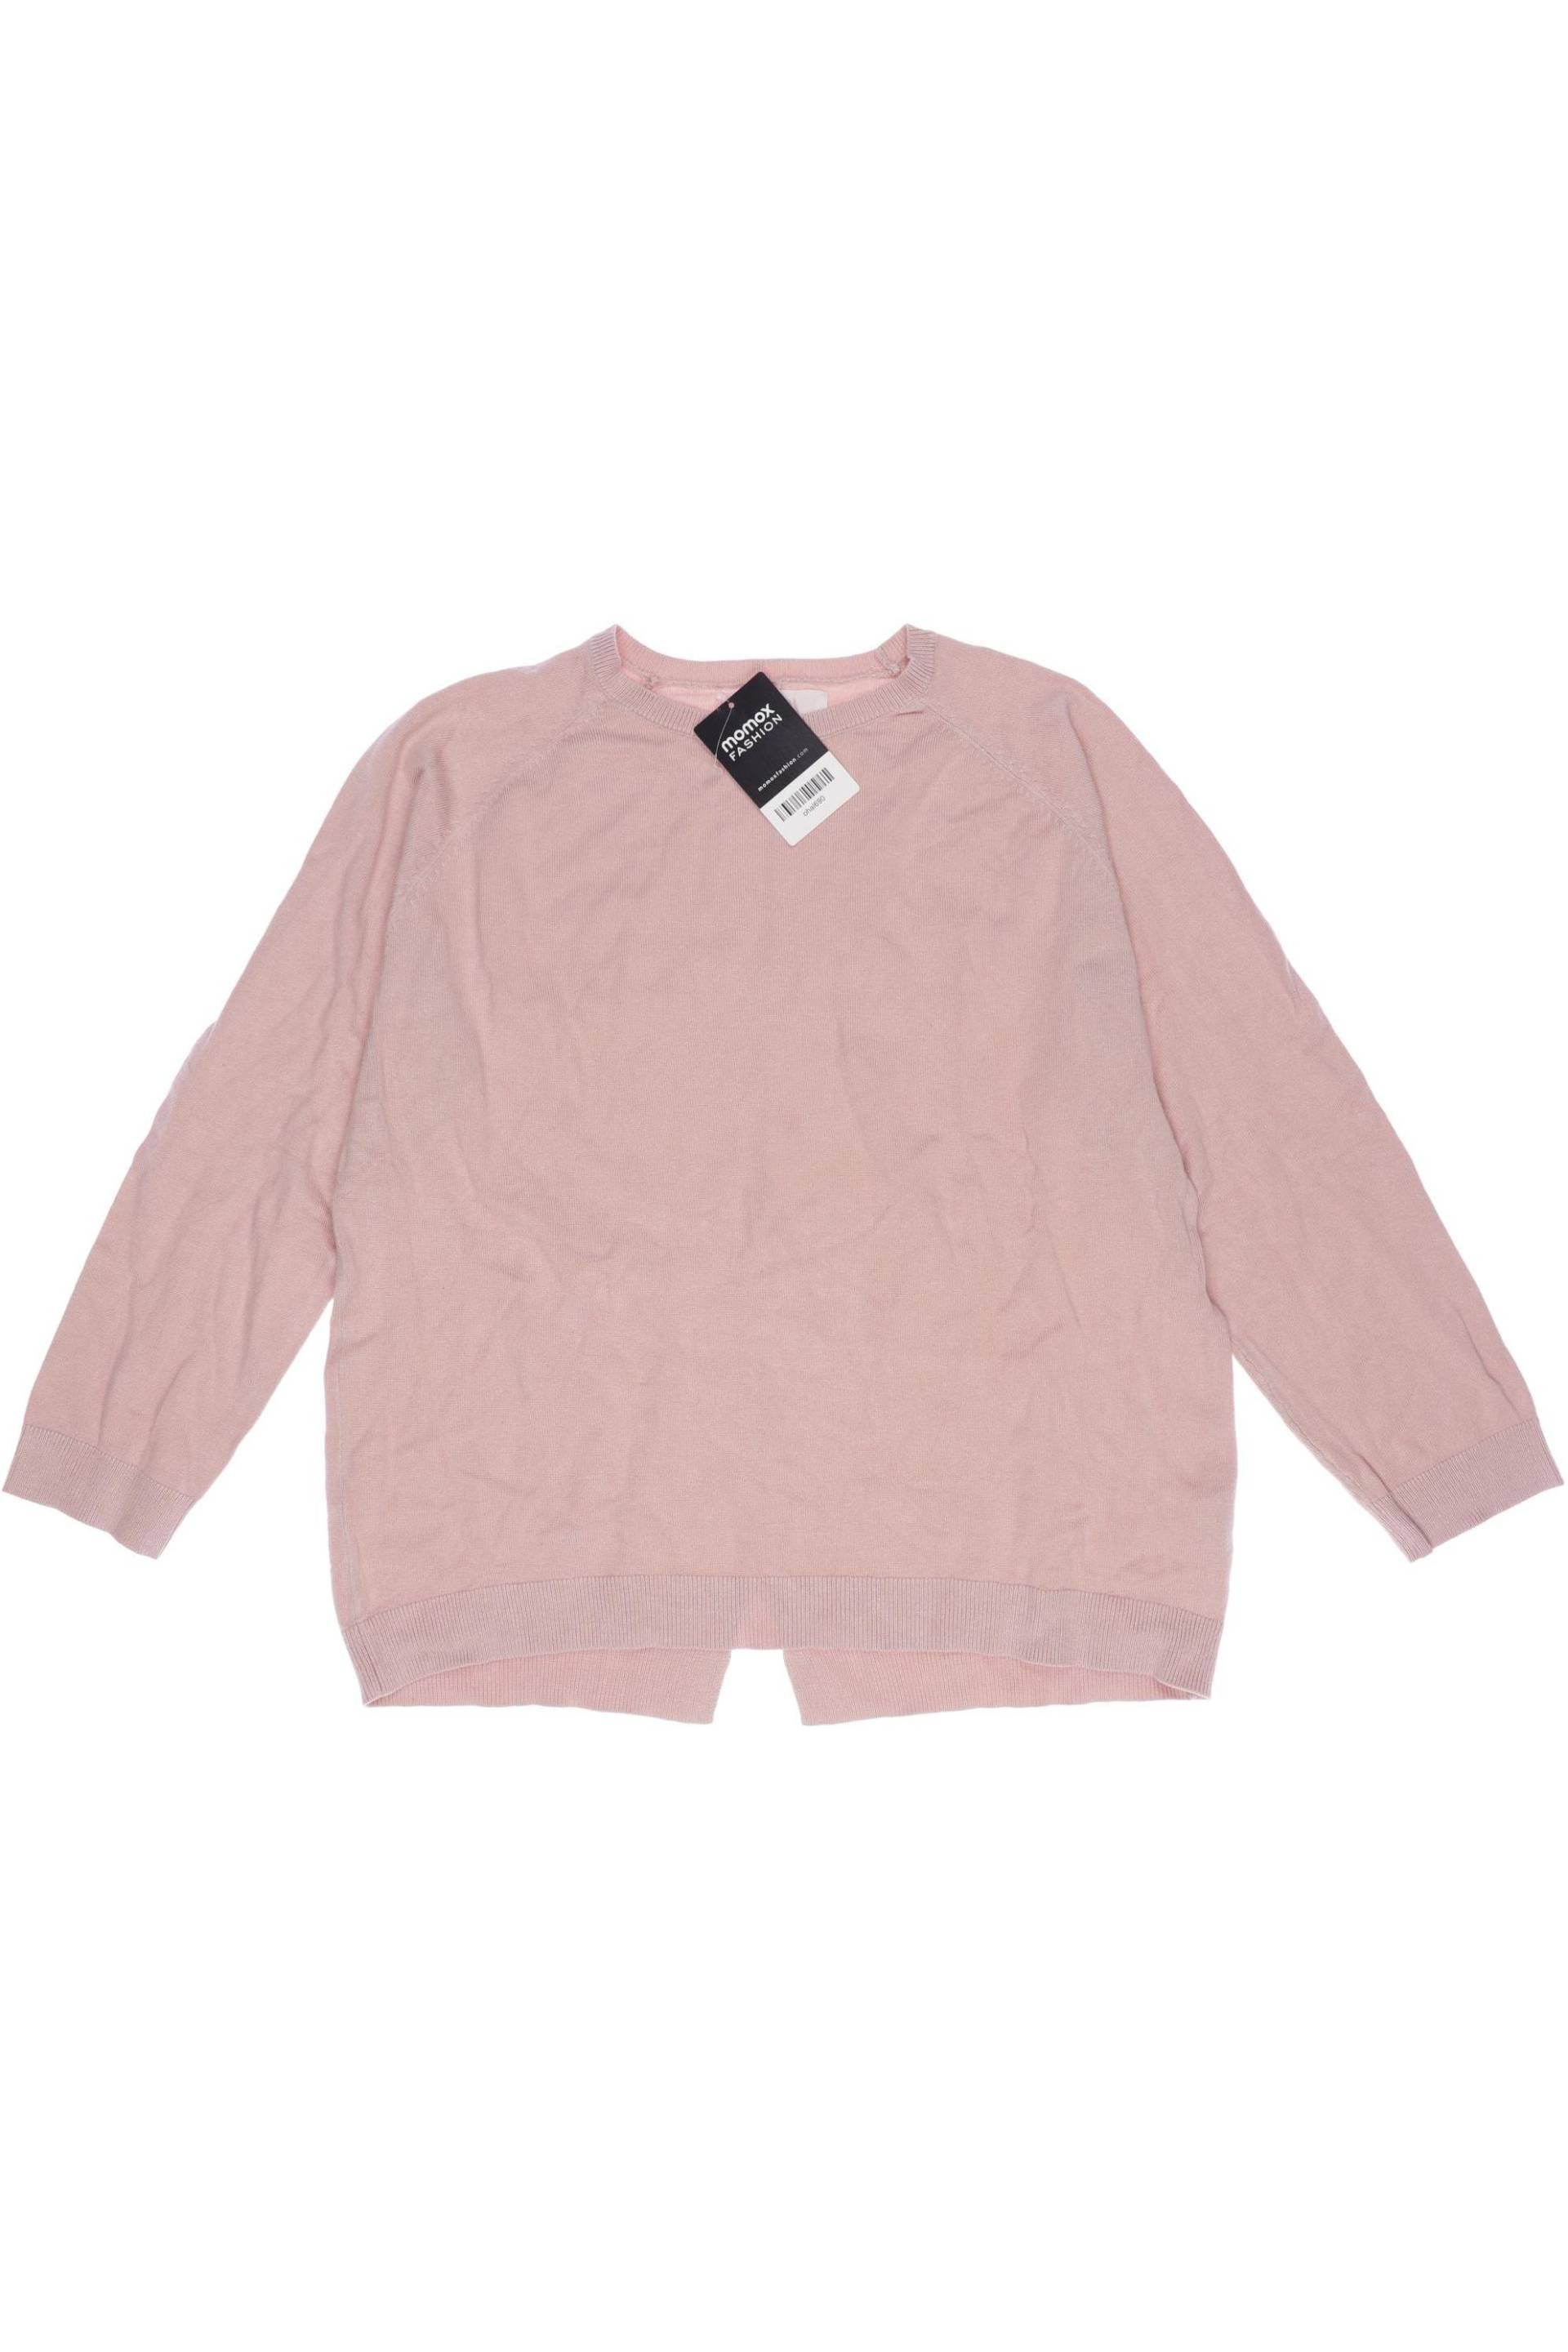 Zara Damen Pullover, pink, Gr. 164 von ZARA